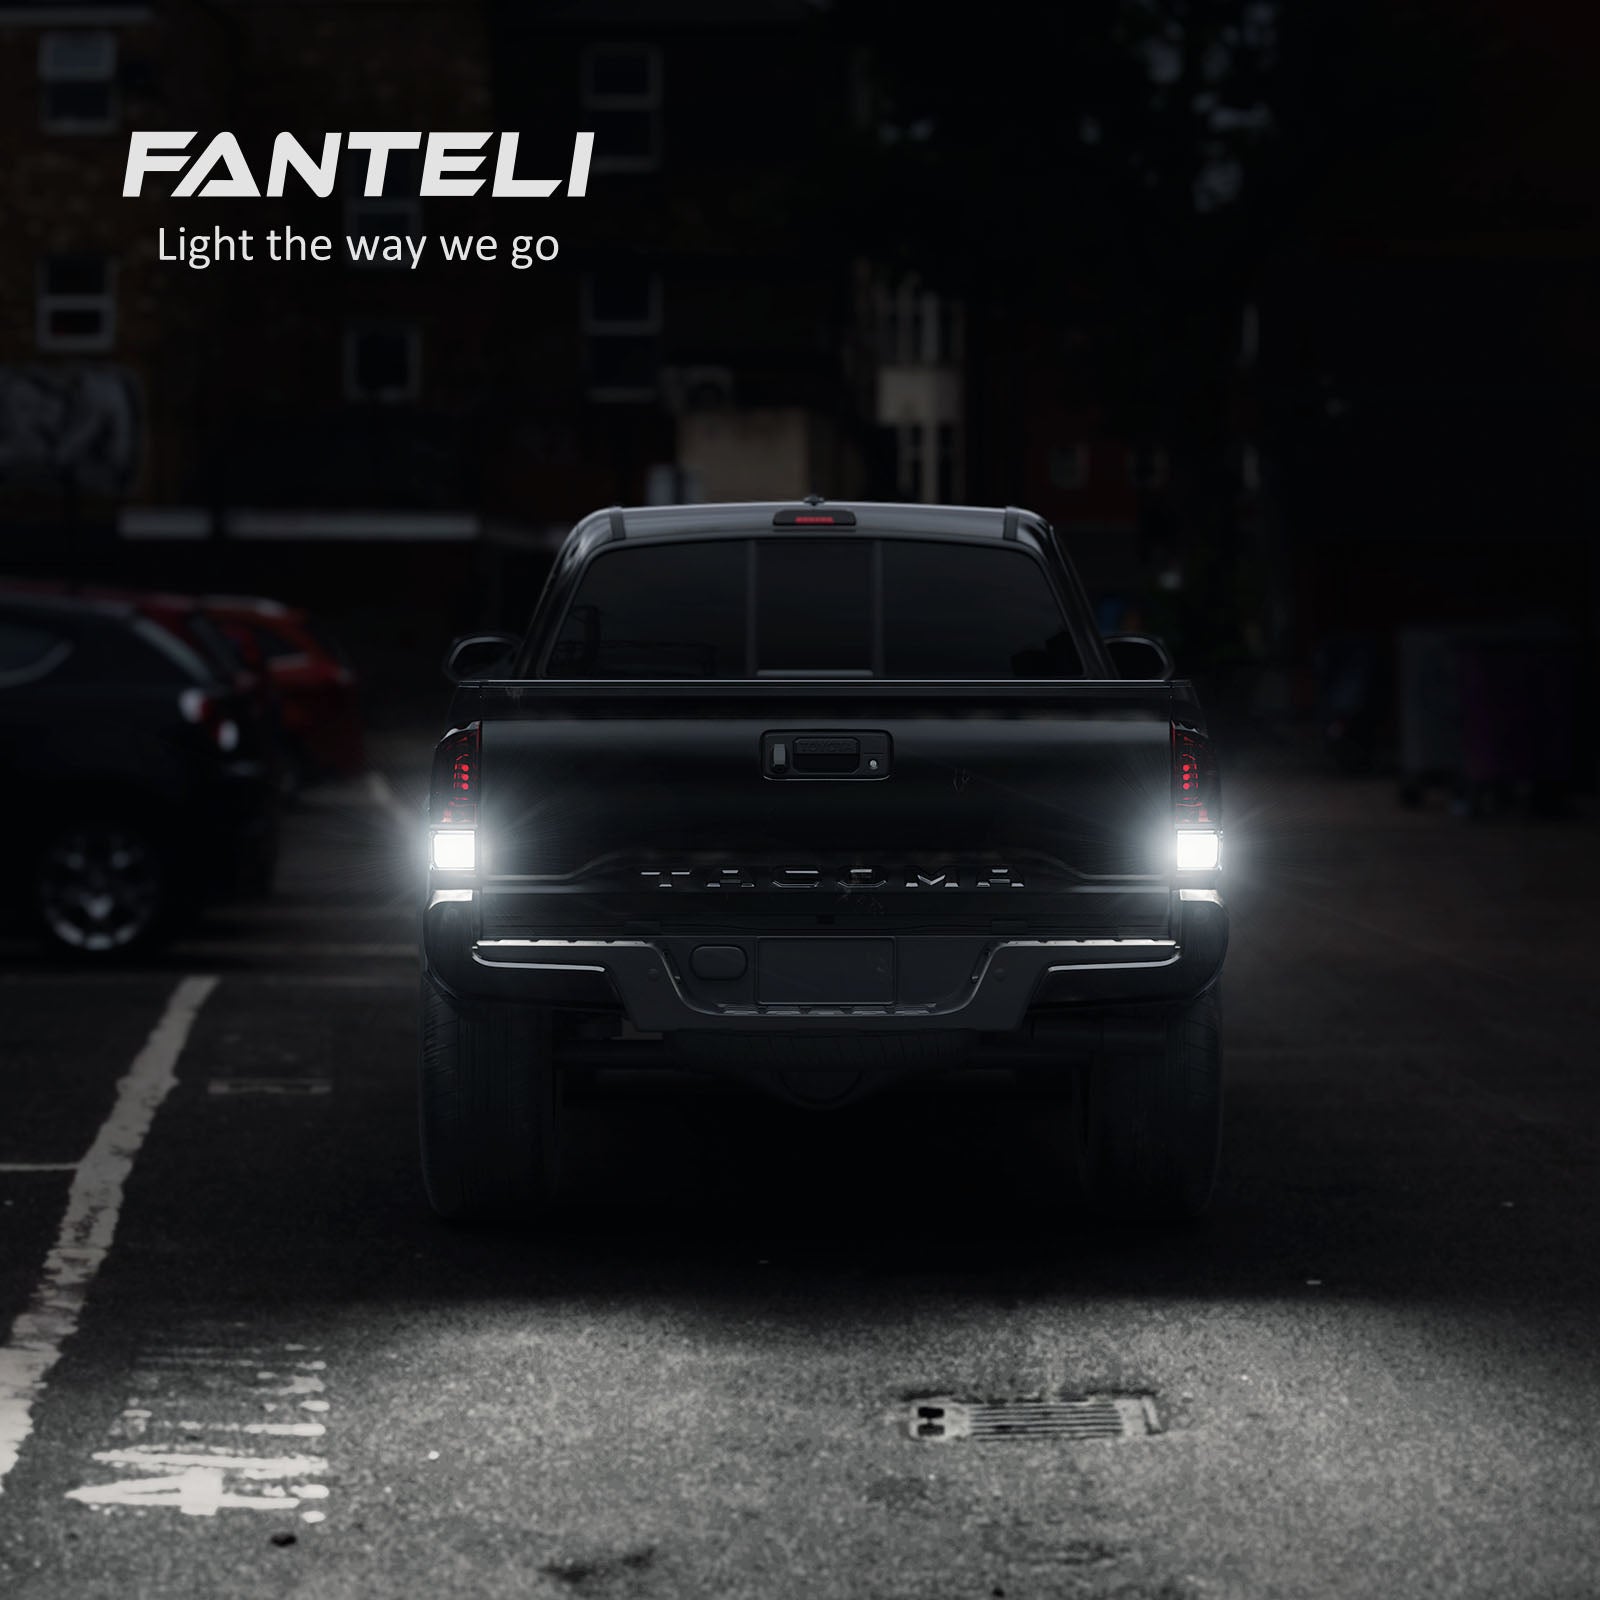 FANTELI H11 LED Fog Light, 12000LM 400% Brighter H16 H8 LED Fog Light Bulb  6500K Cool White Halogen Replacements for Cars Trucks Motorcycles, Pack of